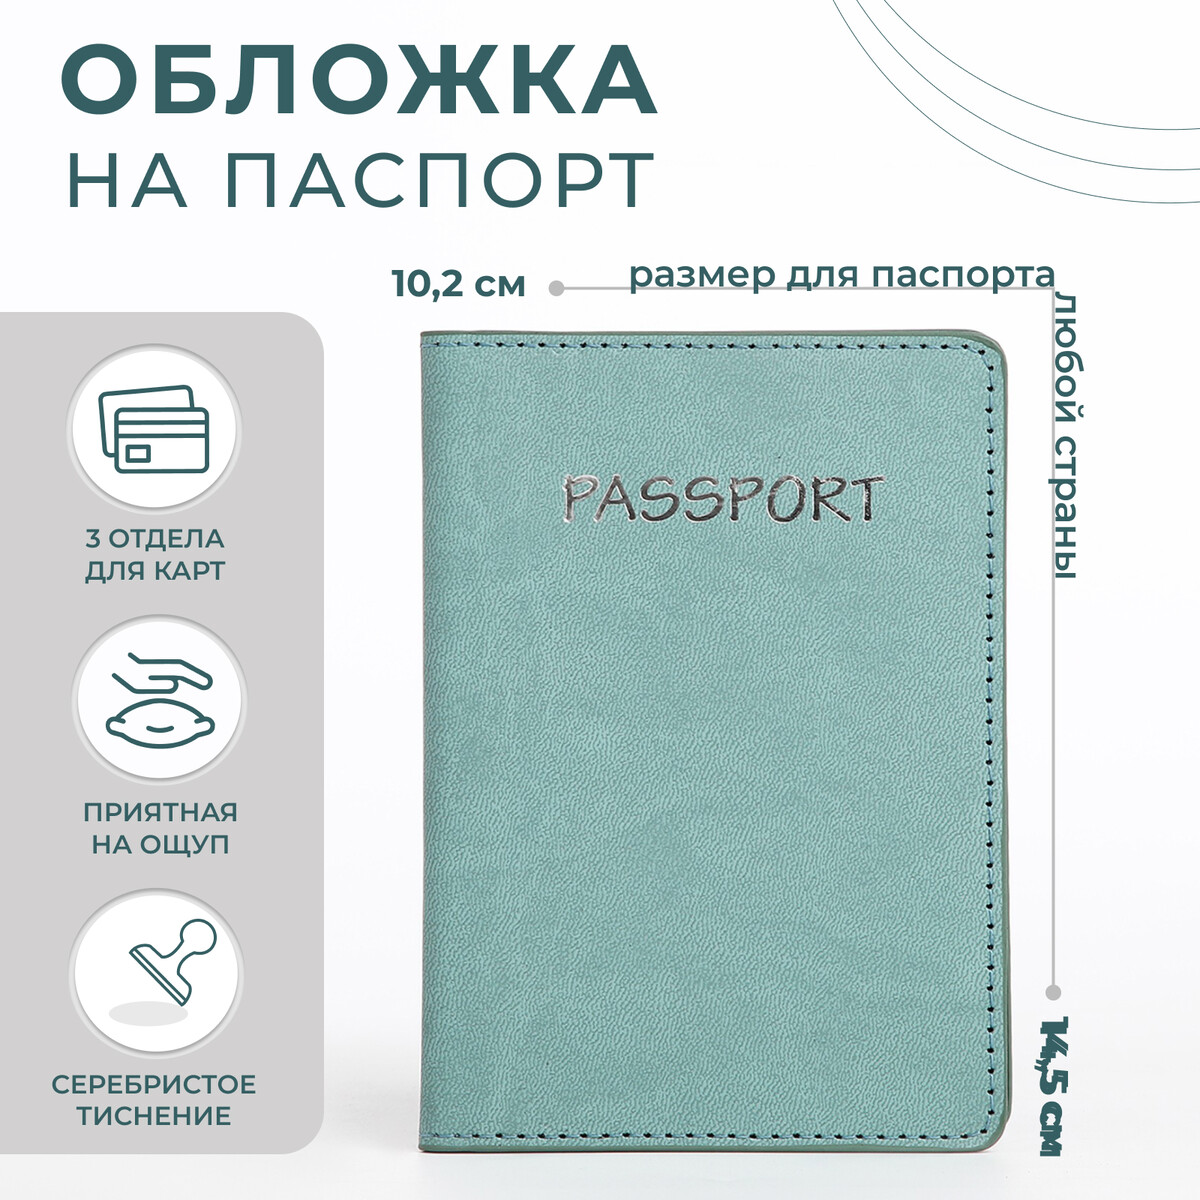 Обложка для паспорта, цвет мятный обложка для паспорта бирюзовый